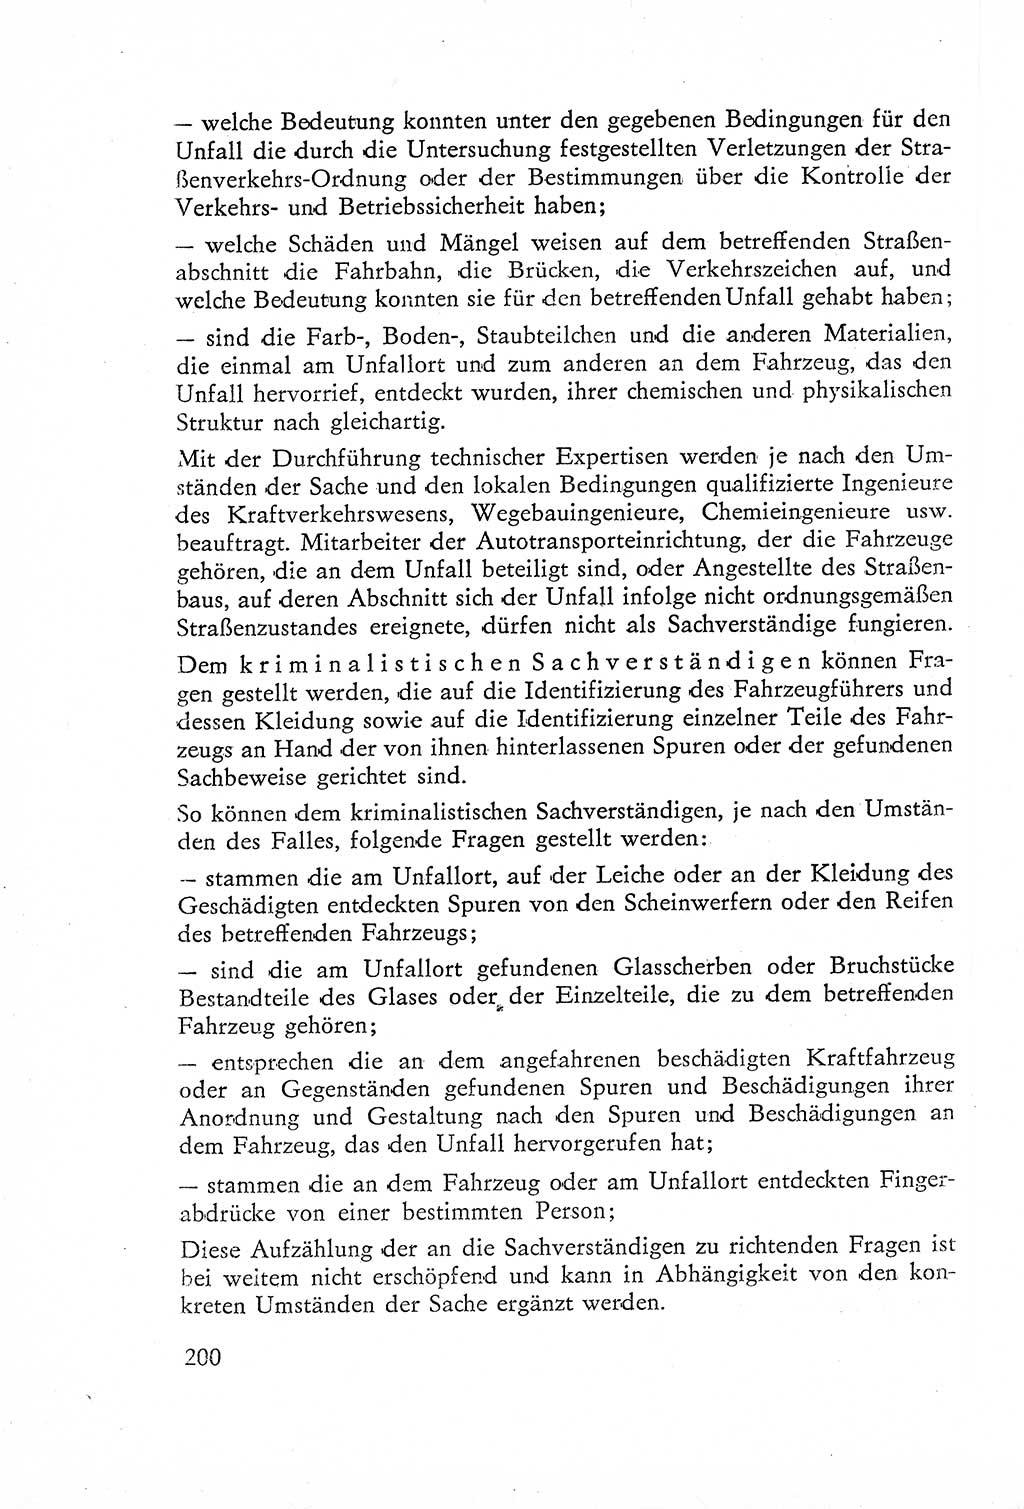 Die Untersuchung einzelner Verbrechensarten [Deutsche Demokratische Republik (DDR)] 1960, Seite 200 (Unters. Verbr.-Art. DDR 1960, S. 200)